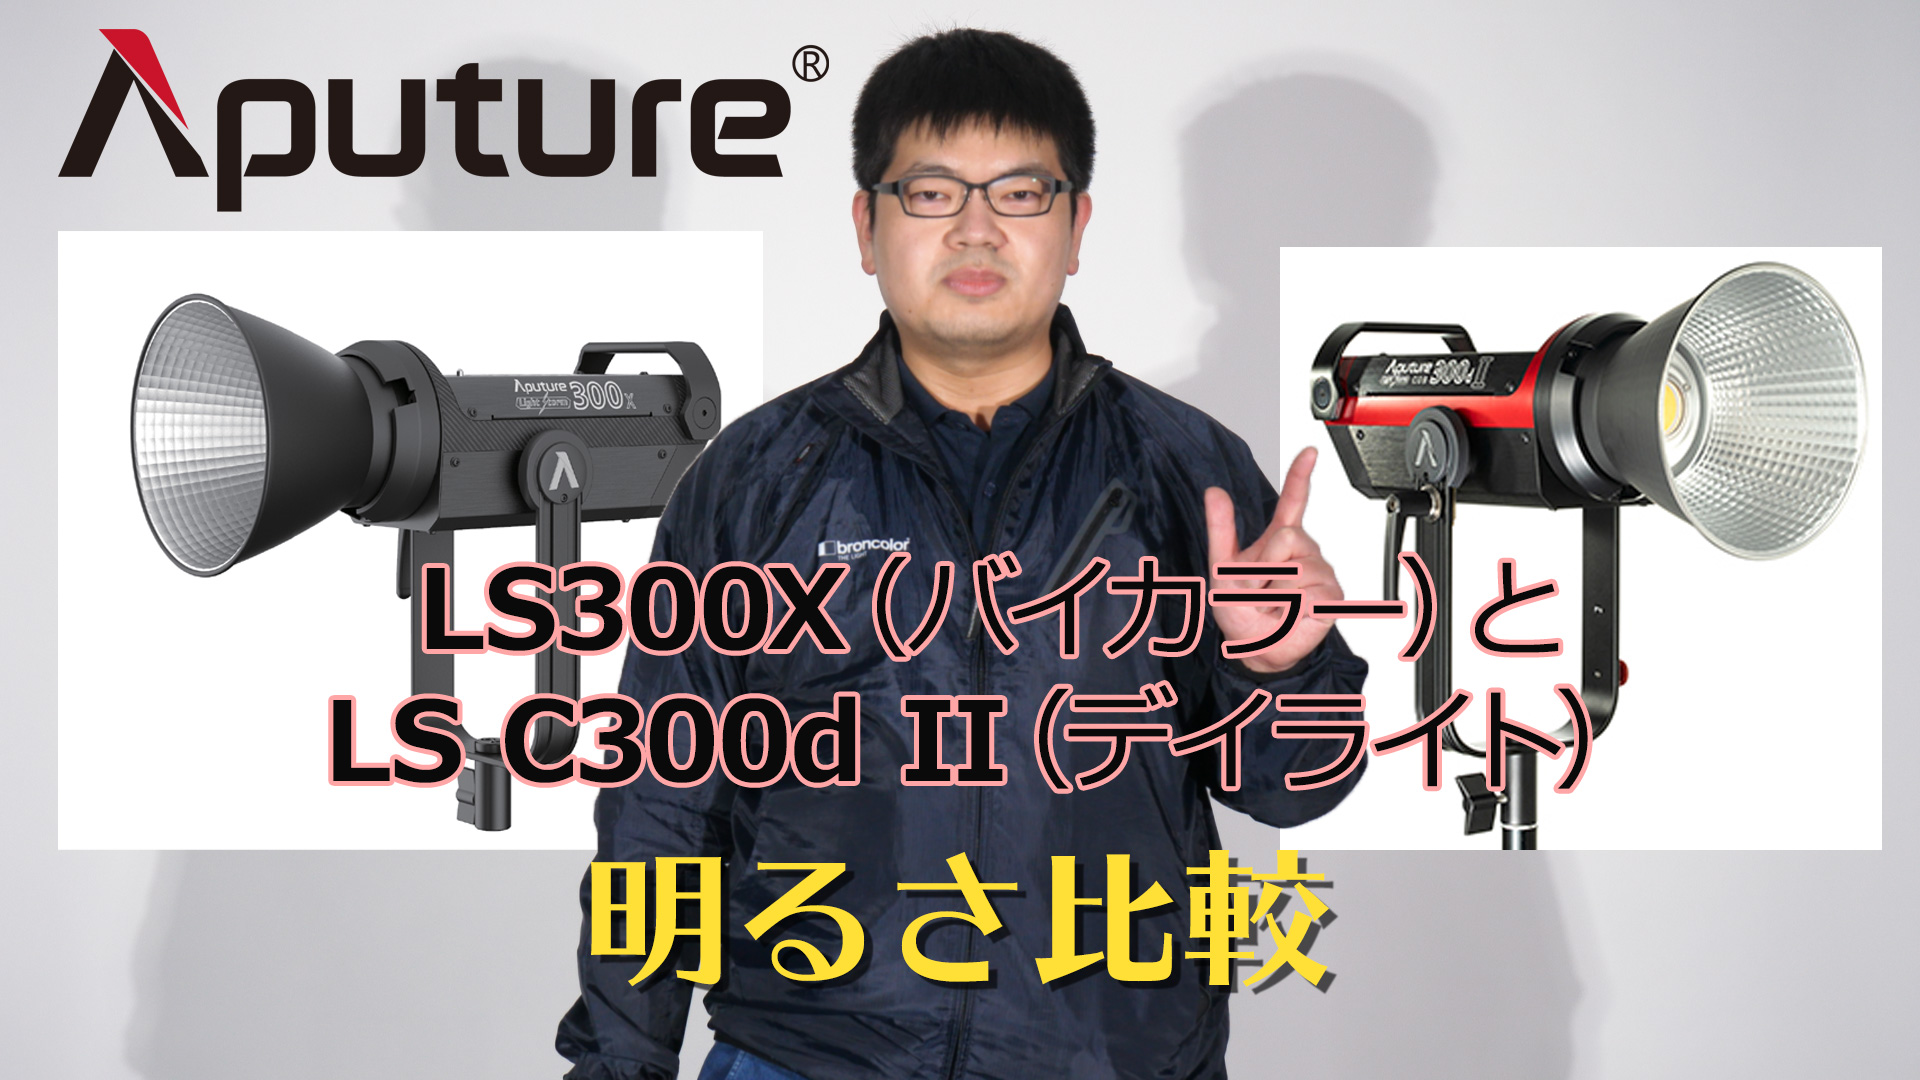 Aputure（アプチャー）LS C300d IIとLS 300Xの明るさ比較 【アガイ商事オンラインショールーム】